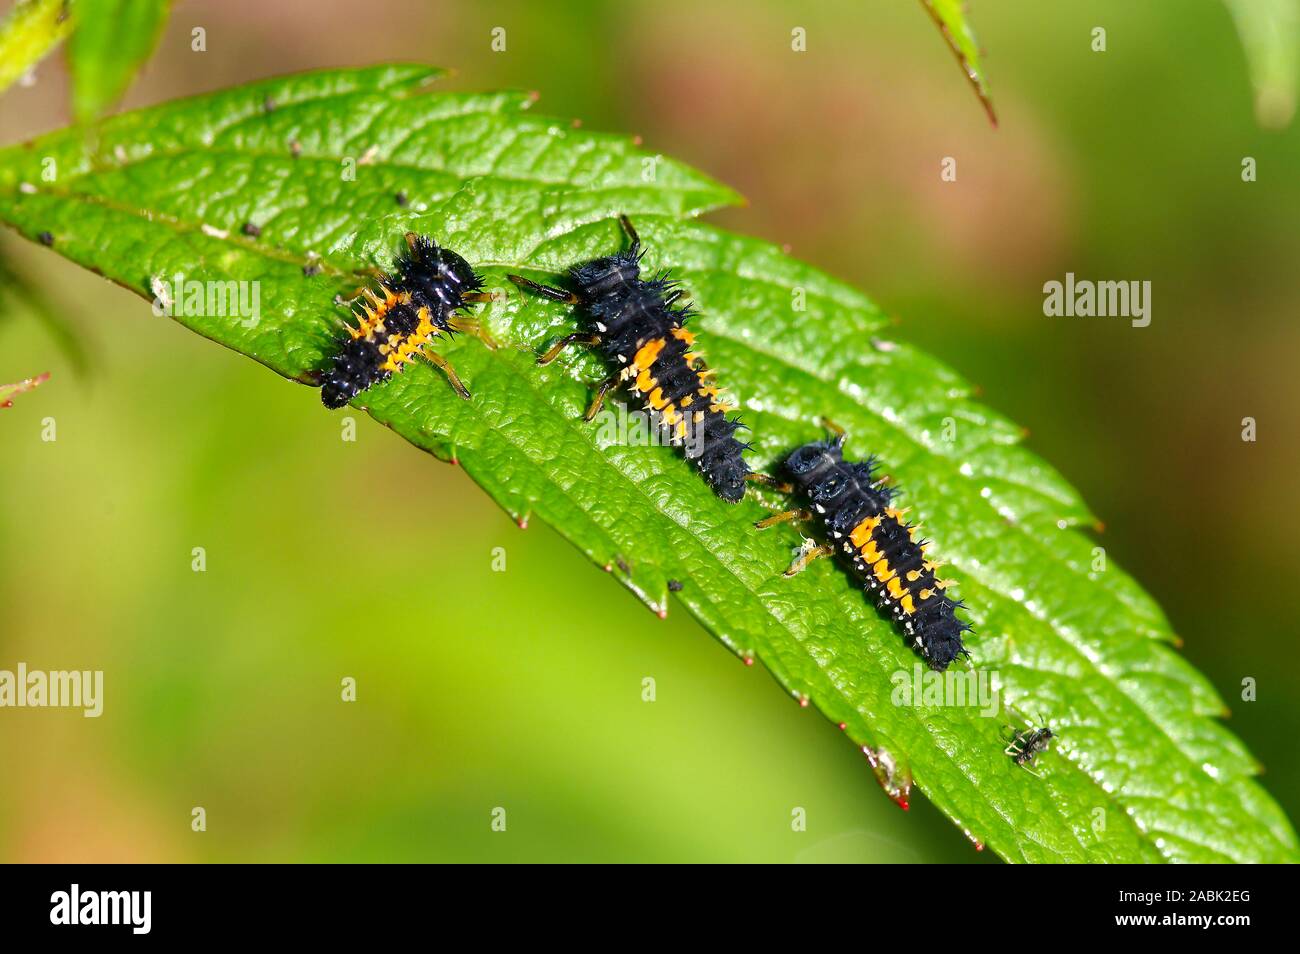 Señora asiática Harmonia axyridis (escarabajos) tres larvas en un lleaf. Alemania Foto de stock